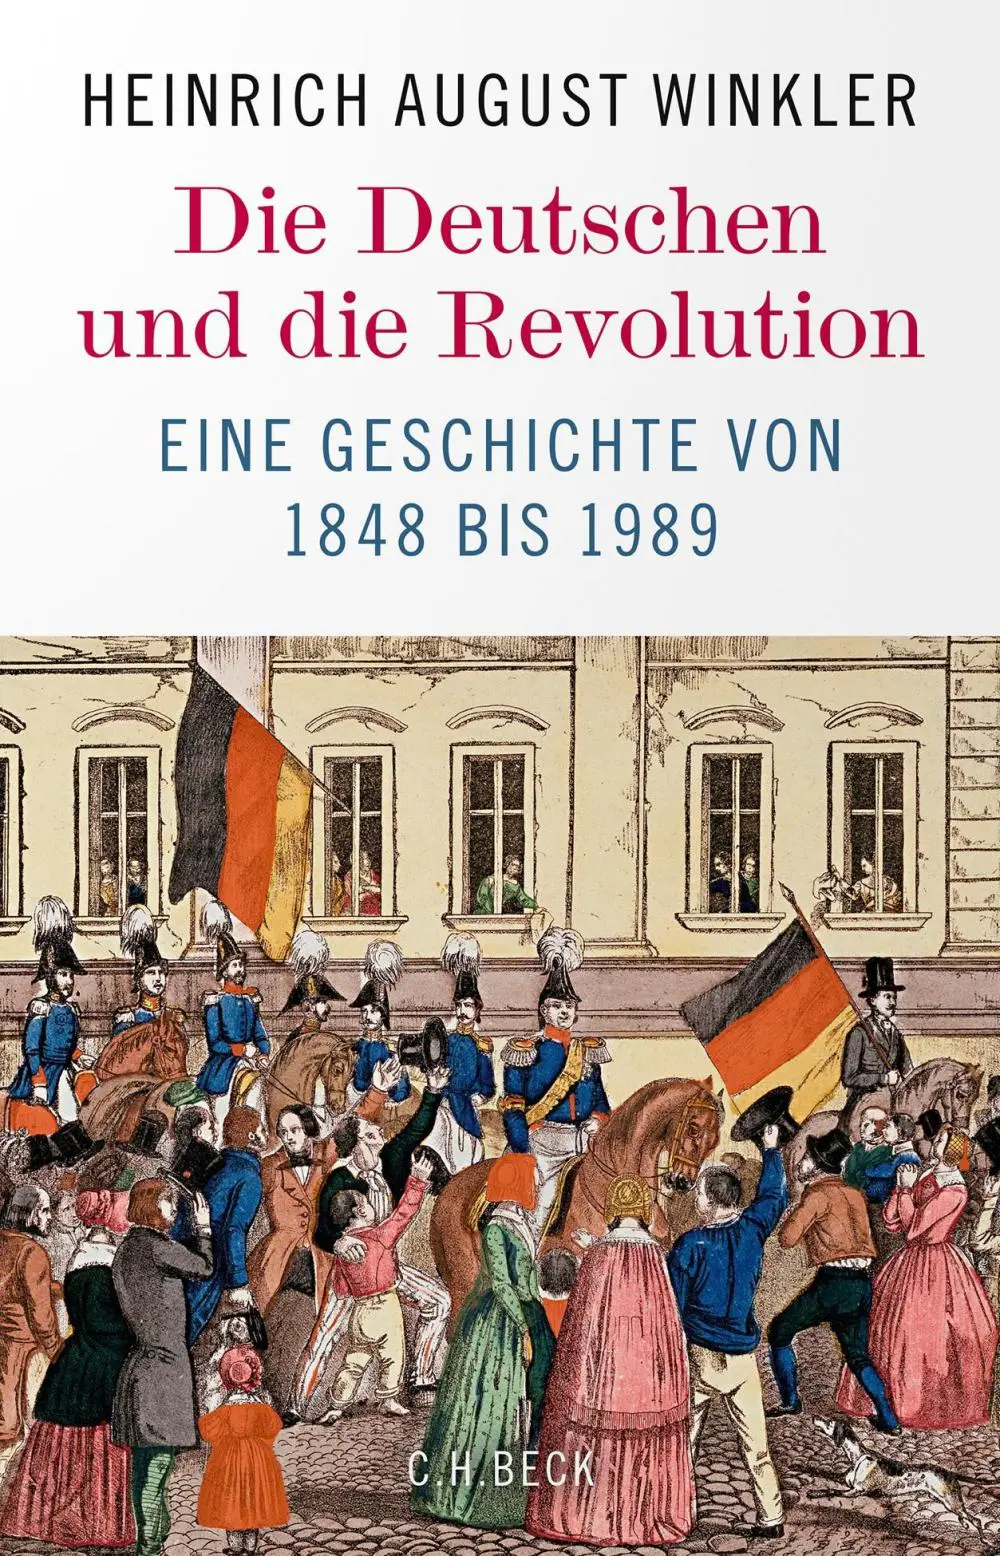 Mehr zum Thema Ehrenrettung für die deutschen Revolutionäre von 1848